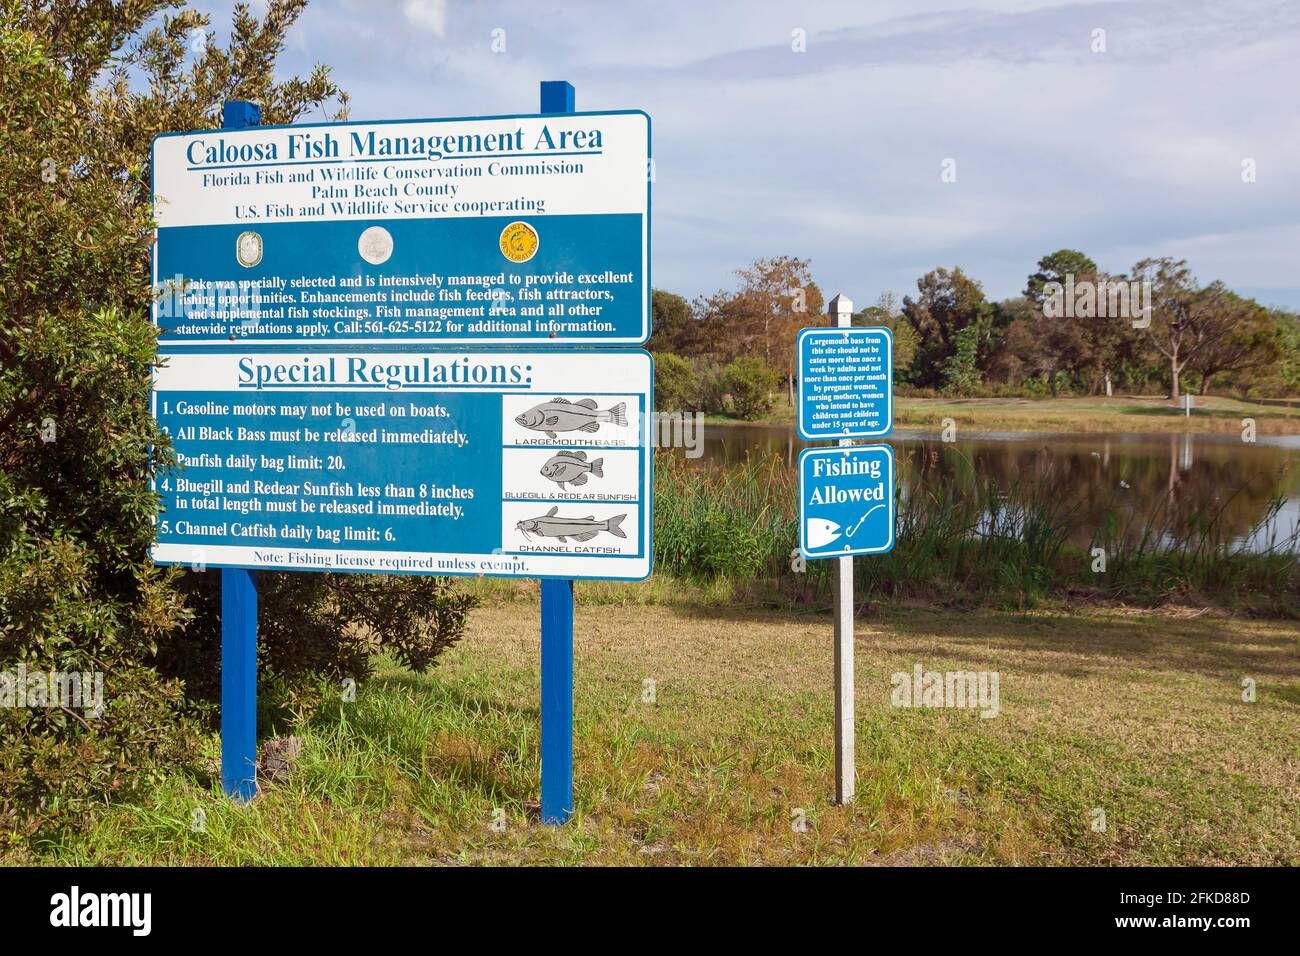 Accedi al Caloosa Park della contea di Palm Beach, Florida, per conoscere le regole e le normative sulla gestione del pesce. Foto Stock